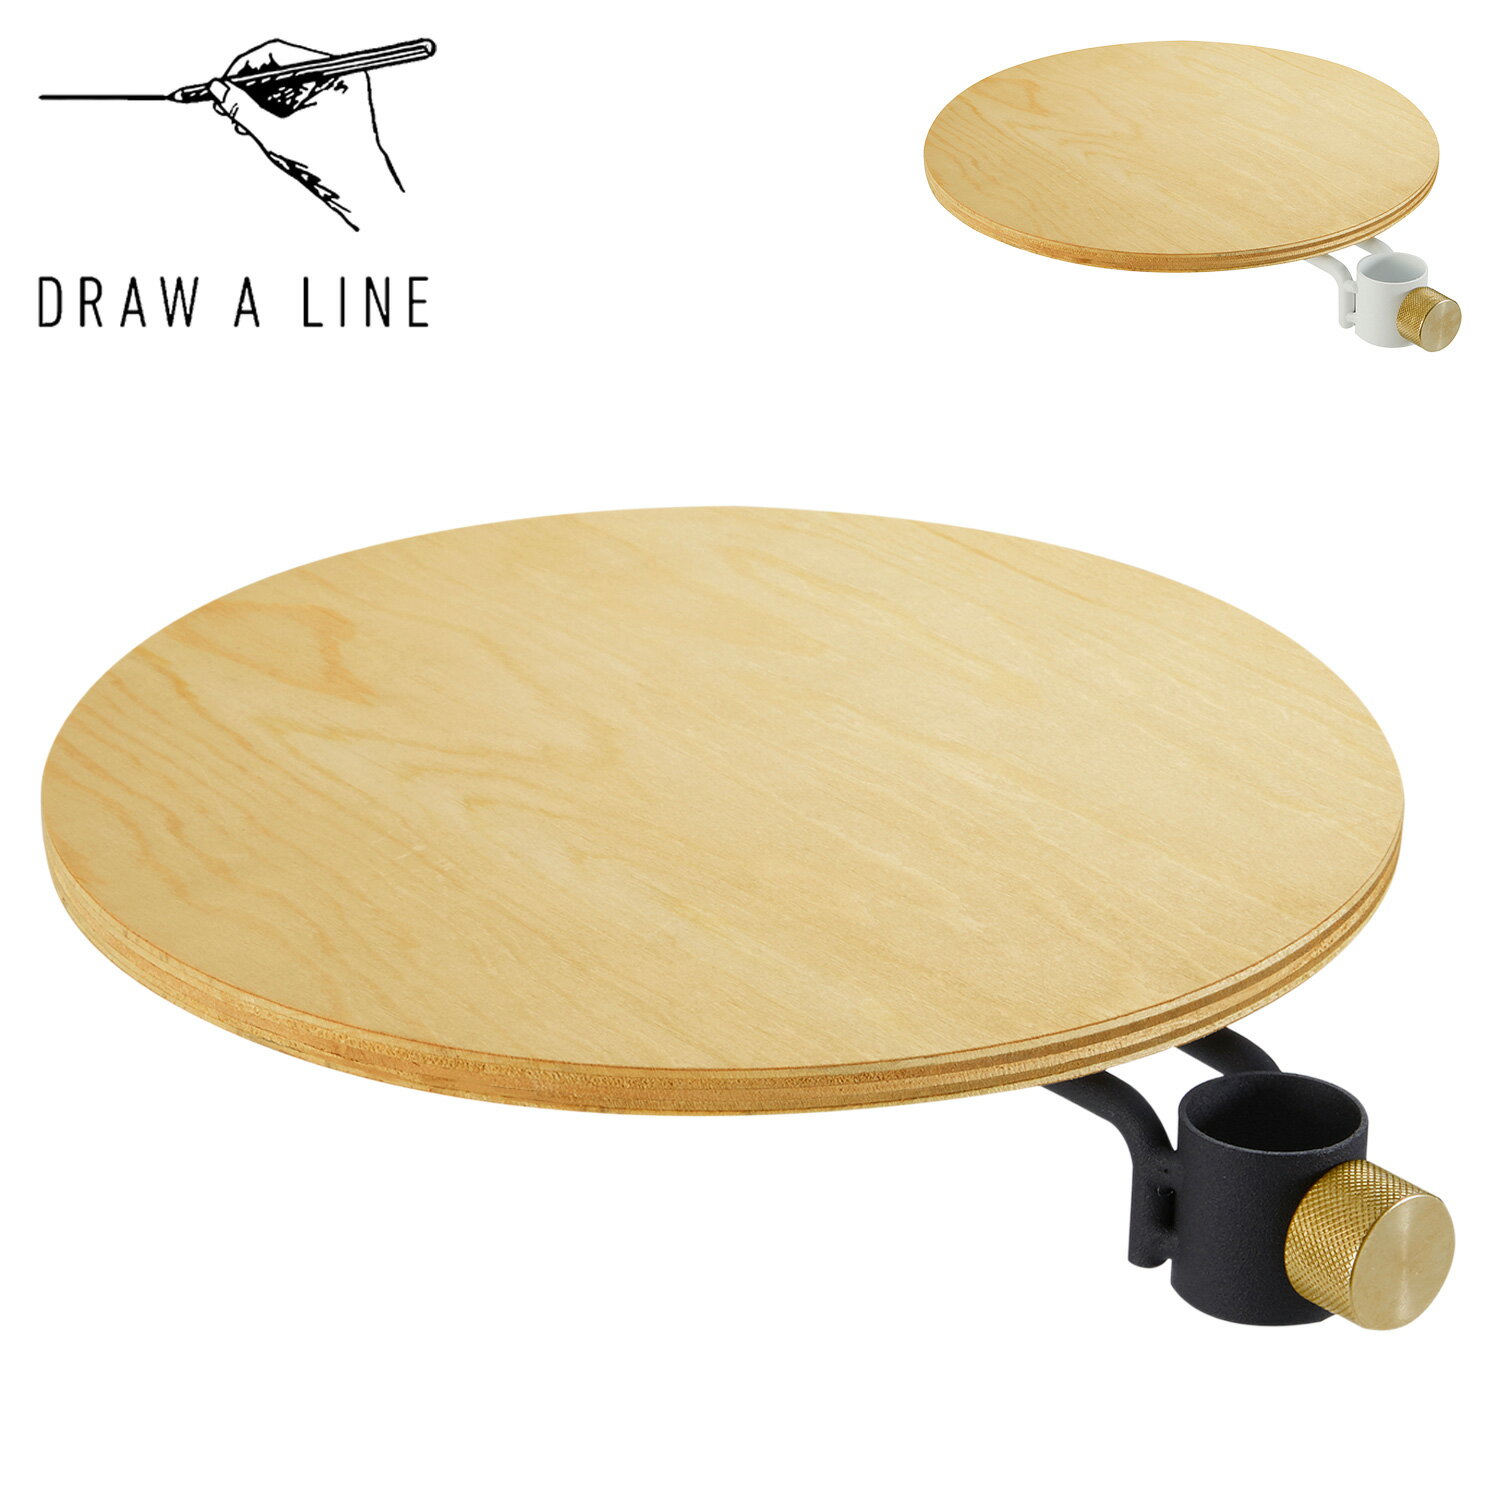 DRAW A LINE ドローアライン テーブル 収納棚 ラック 丸テーブル テーブルA つっぱり棒 伸縮棒 006 Table A 木製 北欧 D-TA